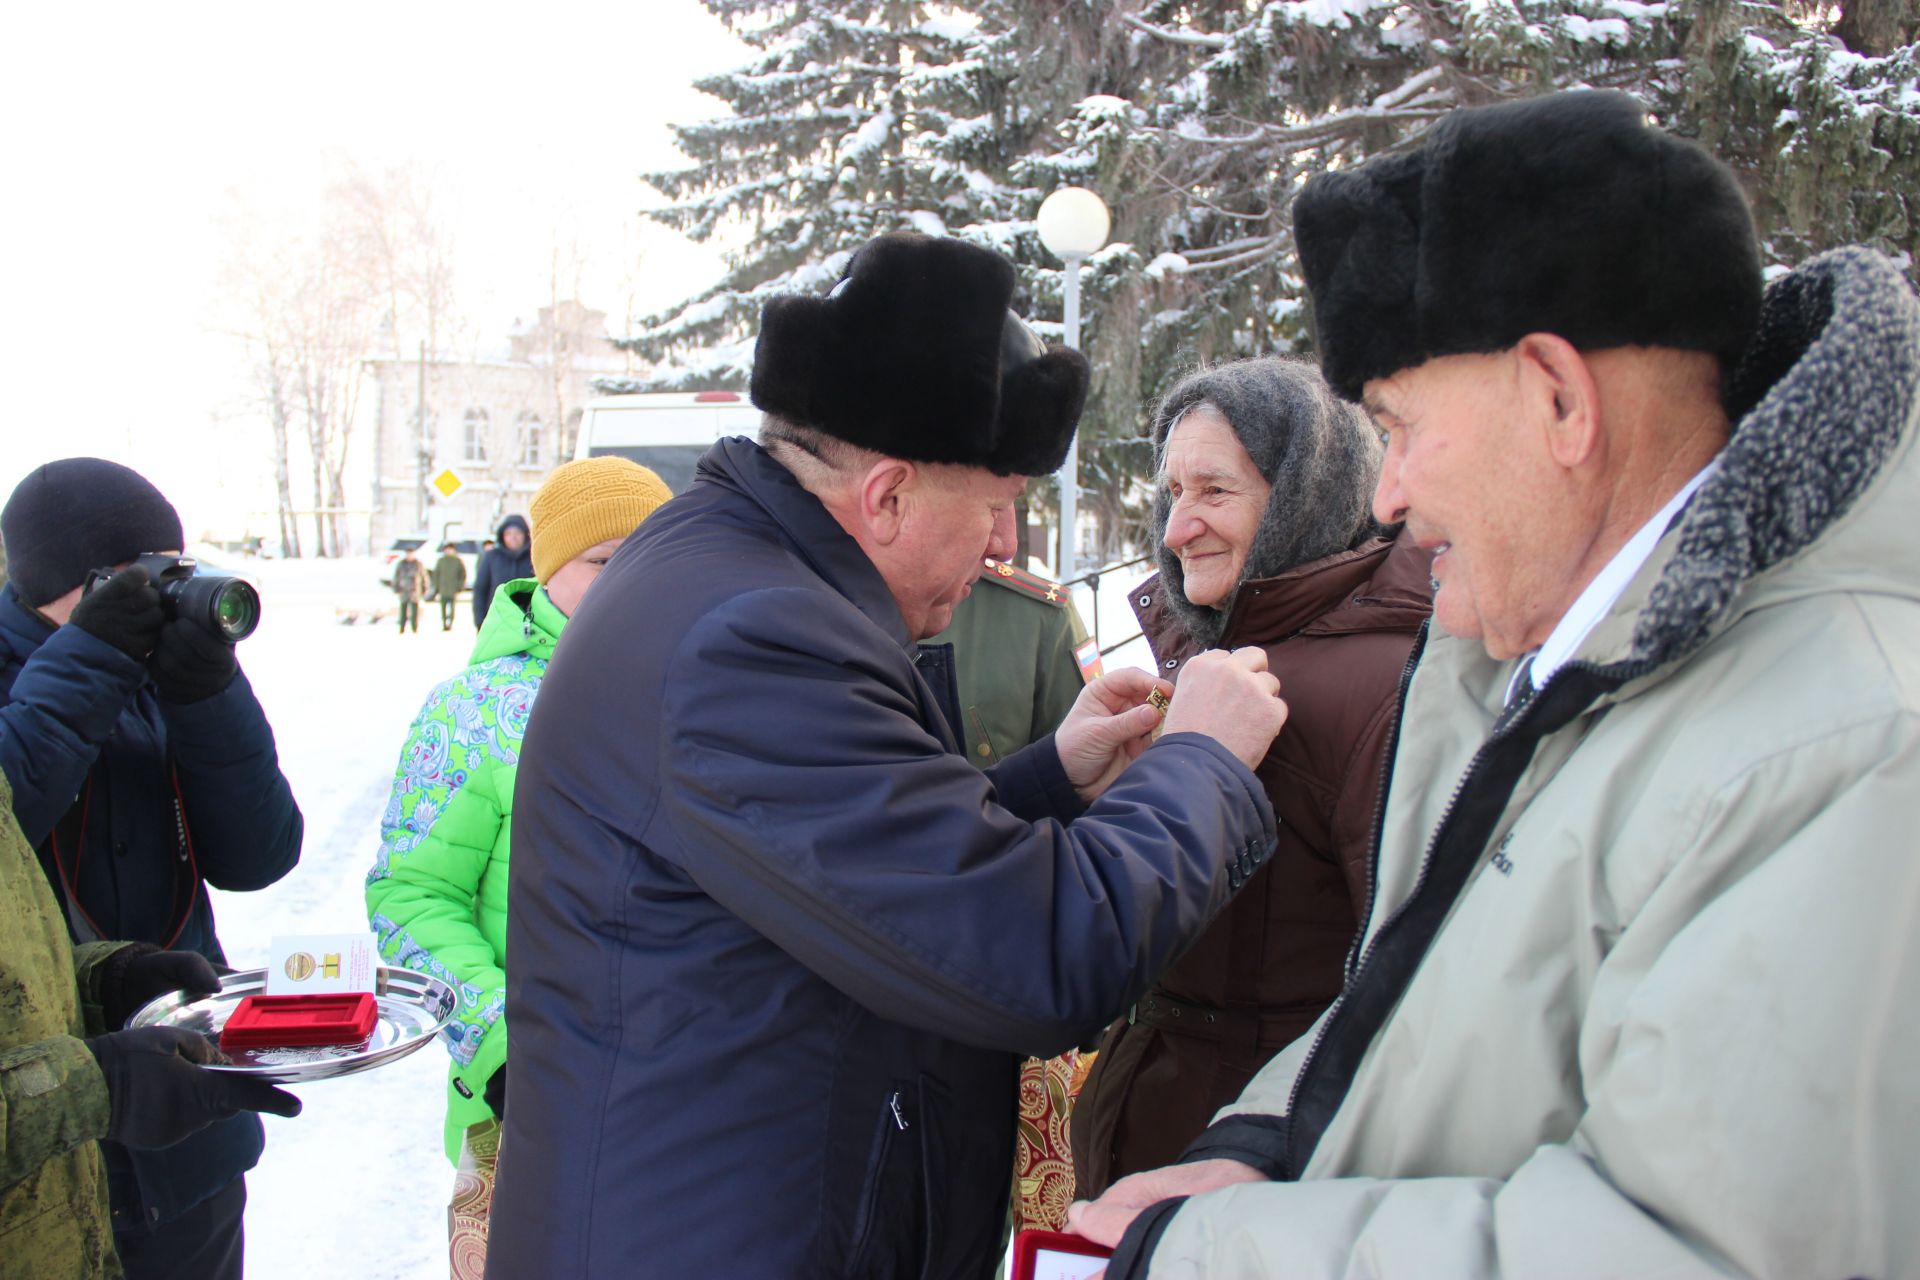 Митинг, посвященный Дню снятия блокады Ленинграда